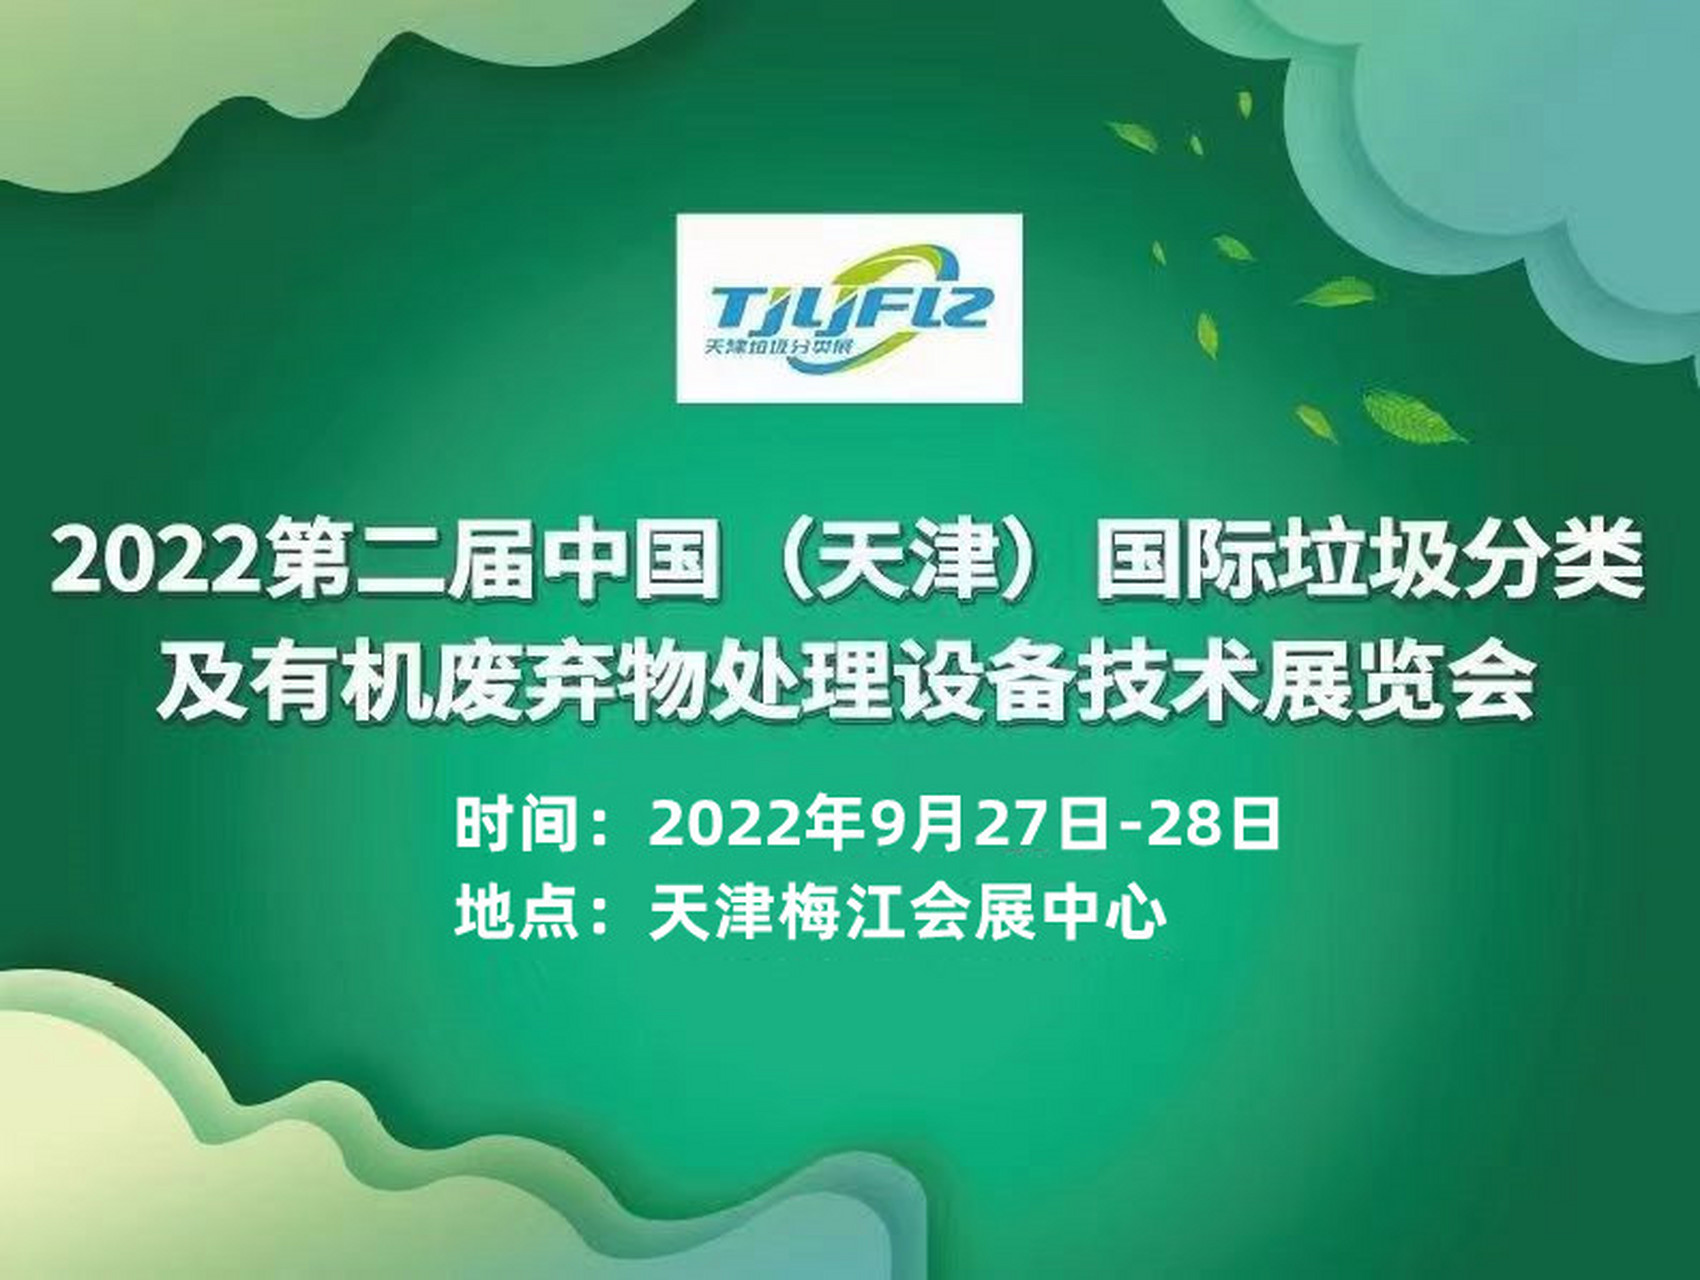 天津环卫展:2022年举办时间为2022年9月27日至28日在天津梅江会展中心